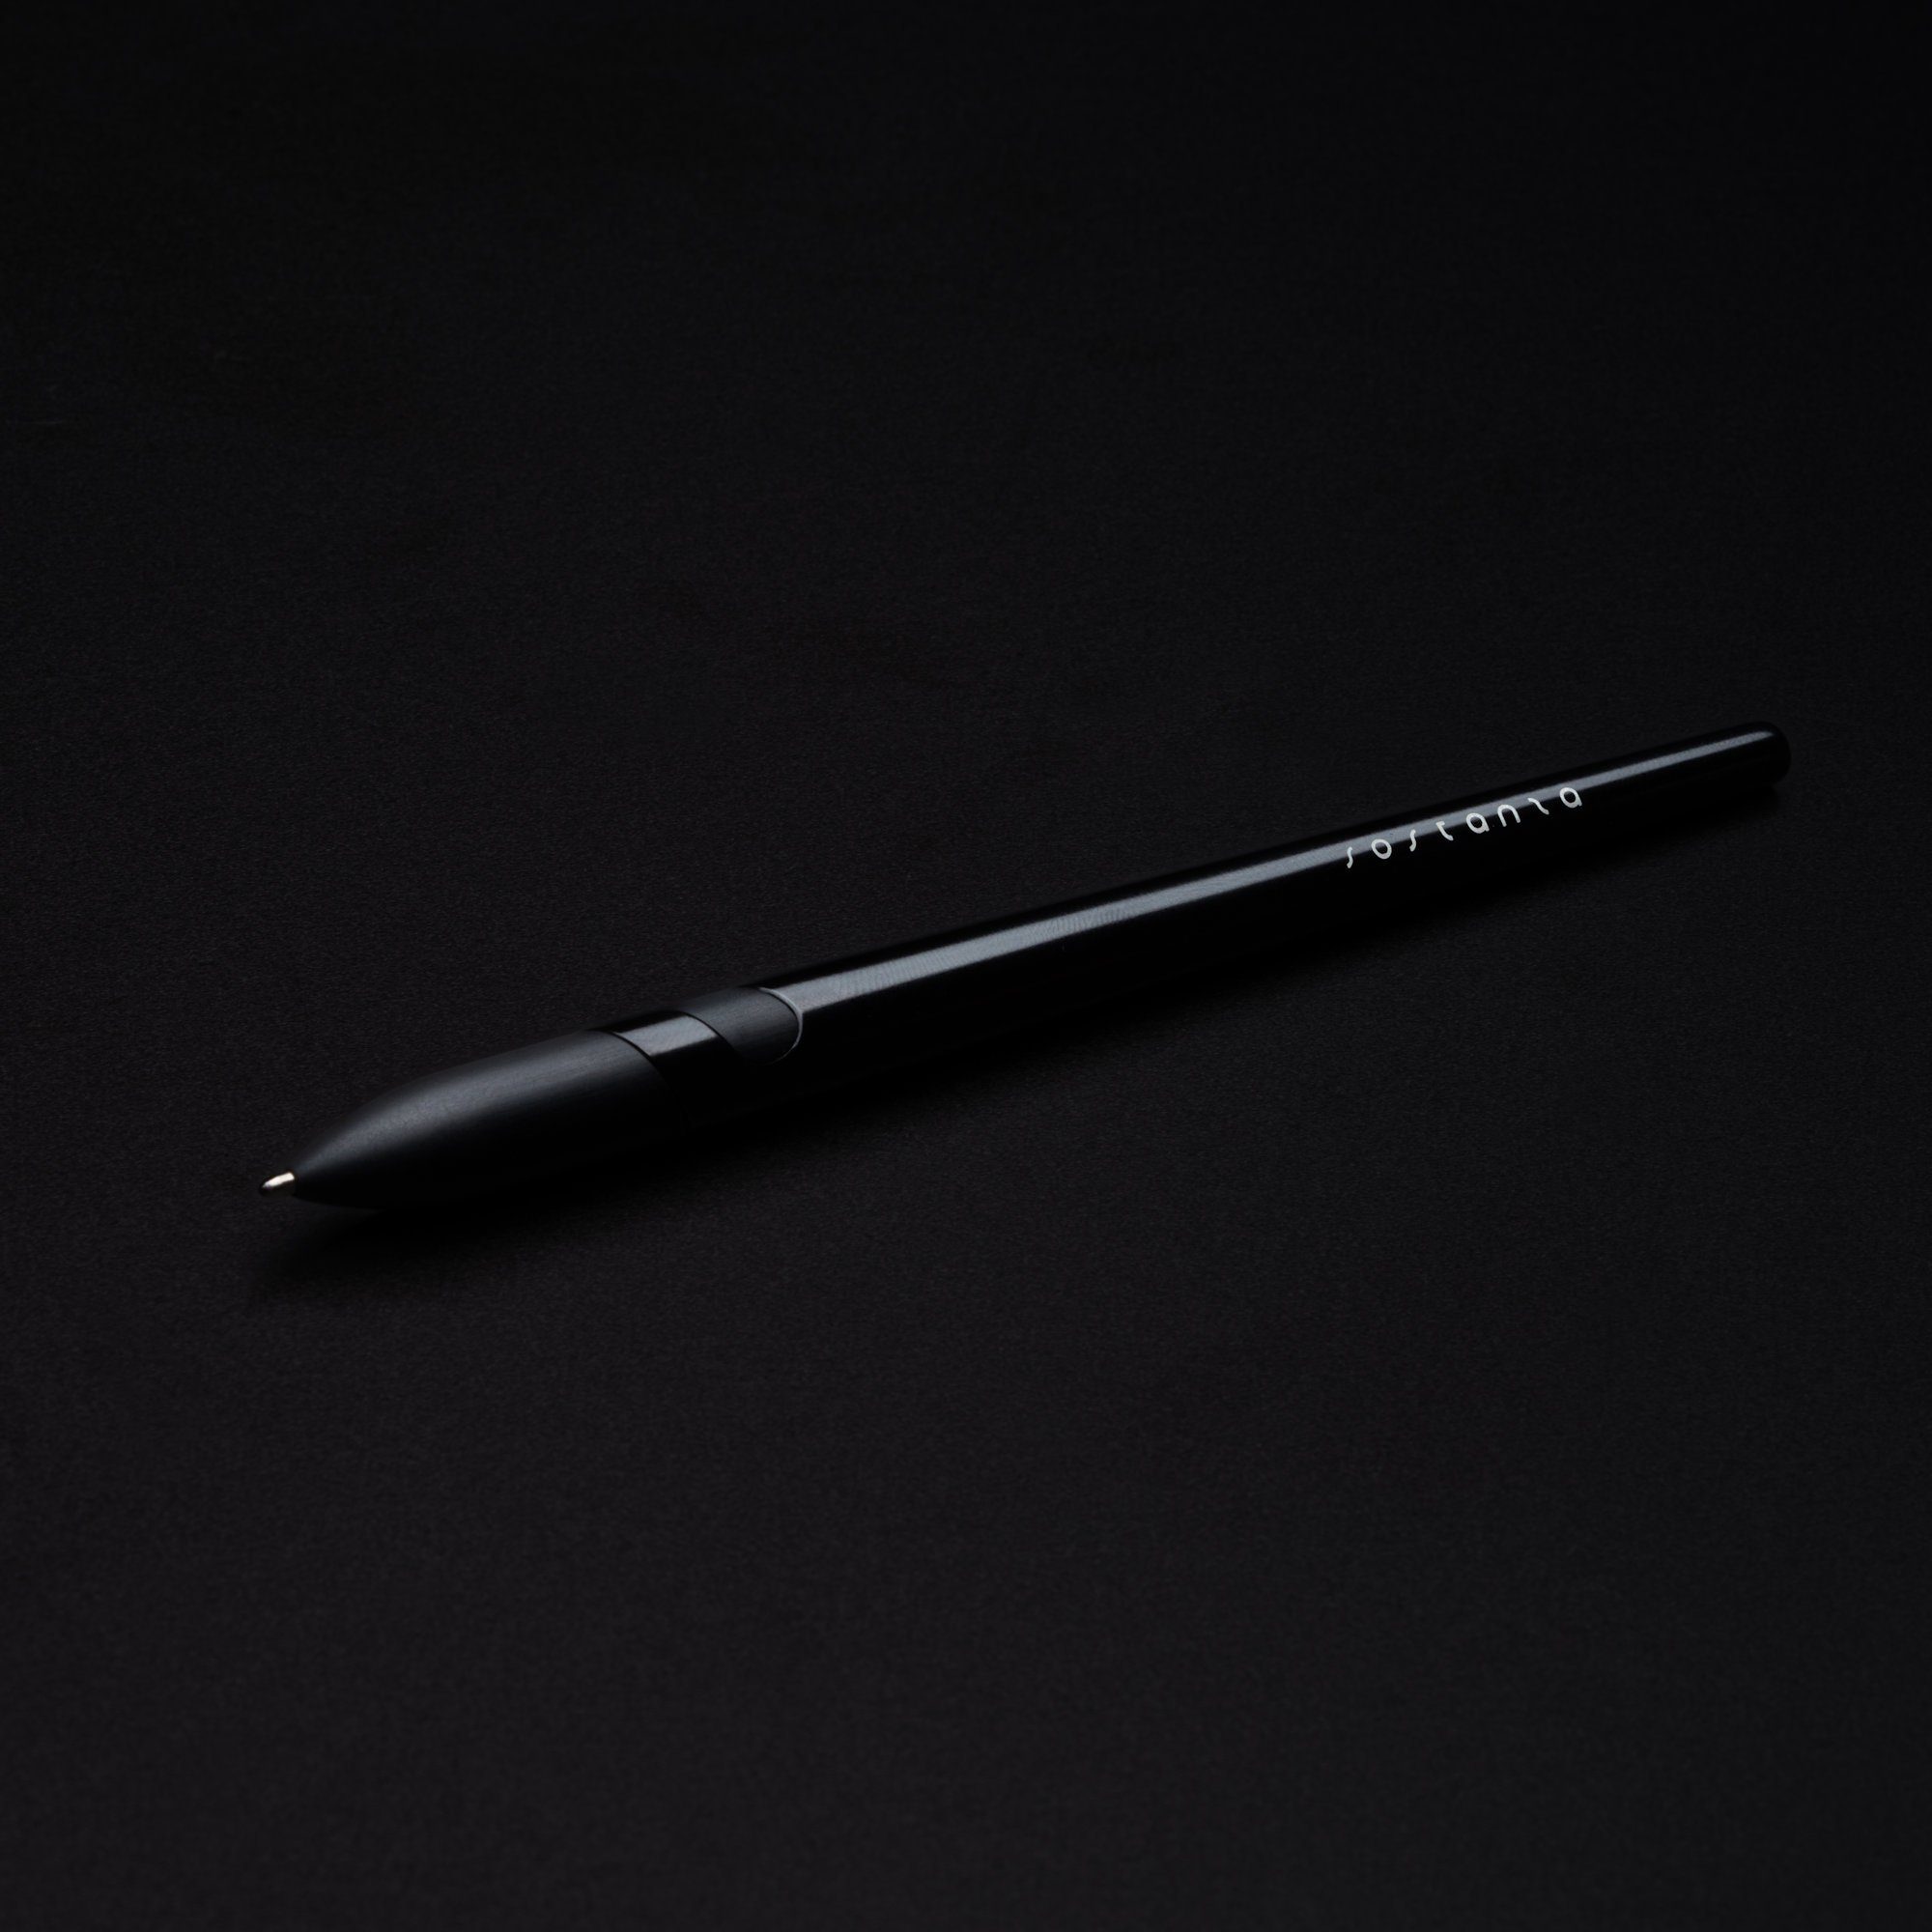 aus Set) Silber Kugelschreiber Pen Pininfar, Sostanza (kein Pininfarina oder Aluminium Kugelschreiber Schwarz